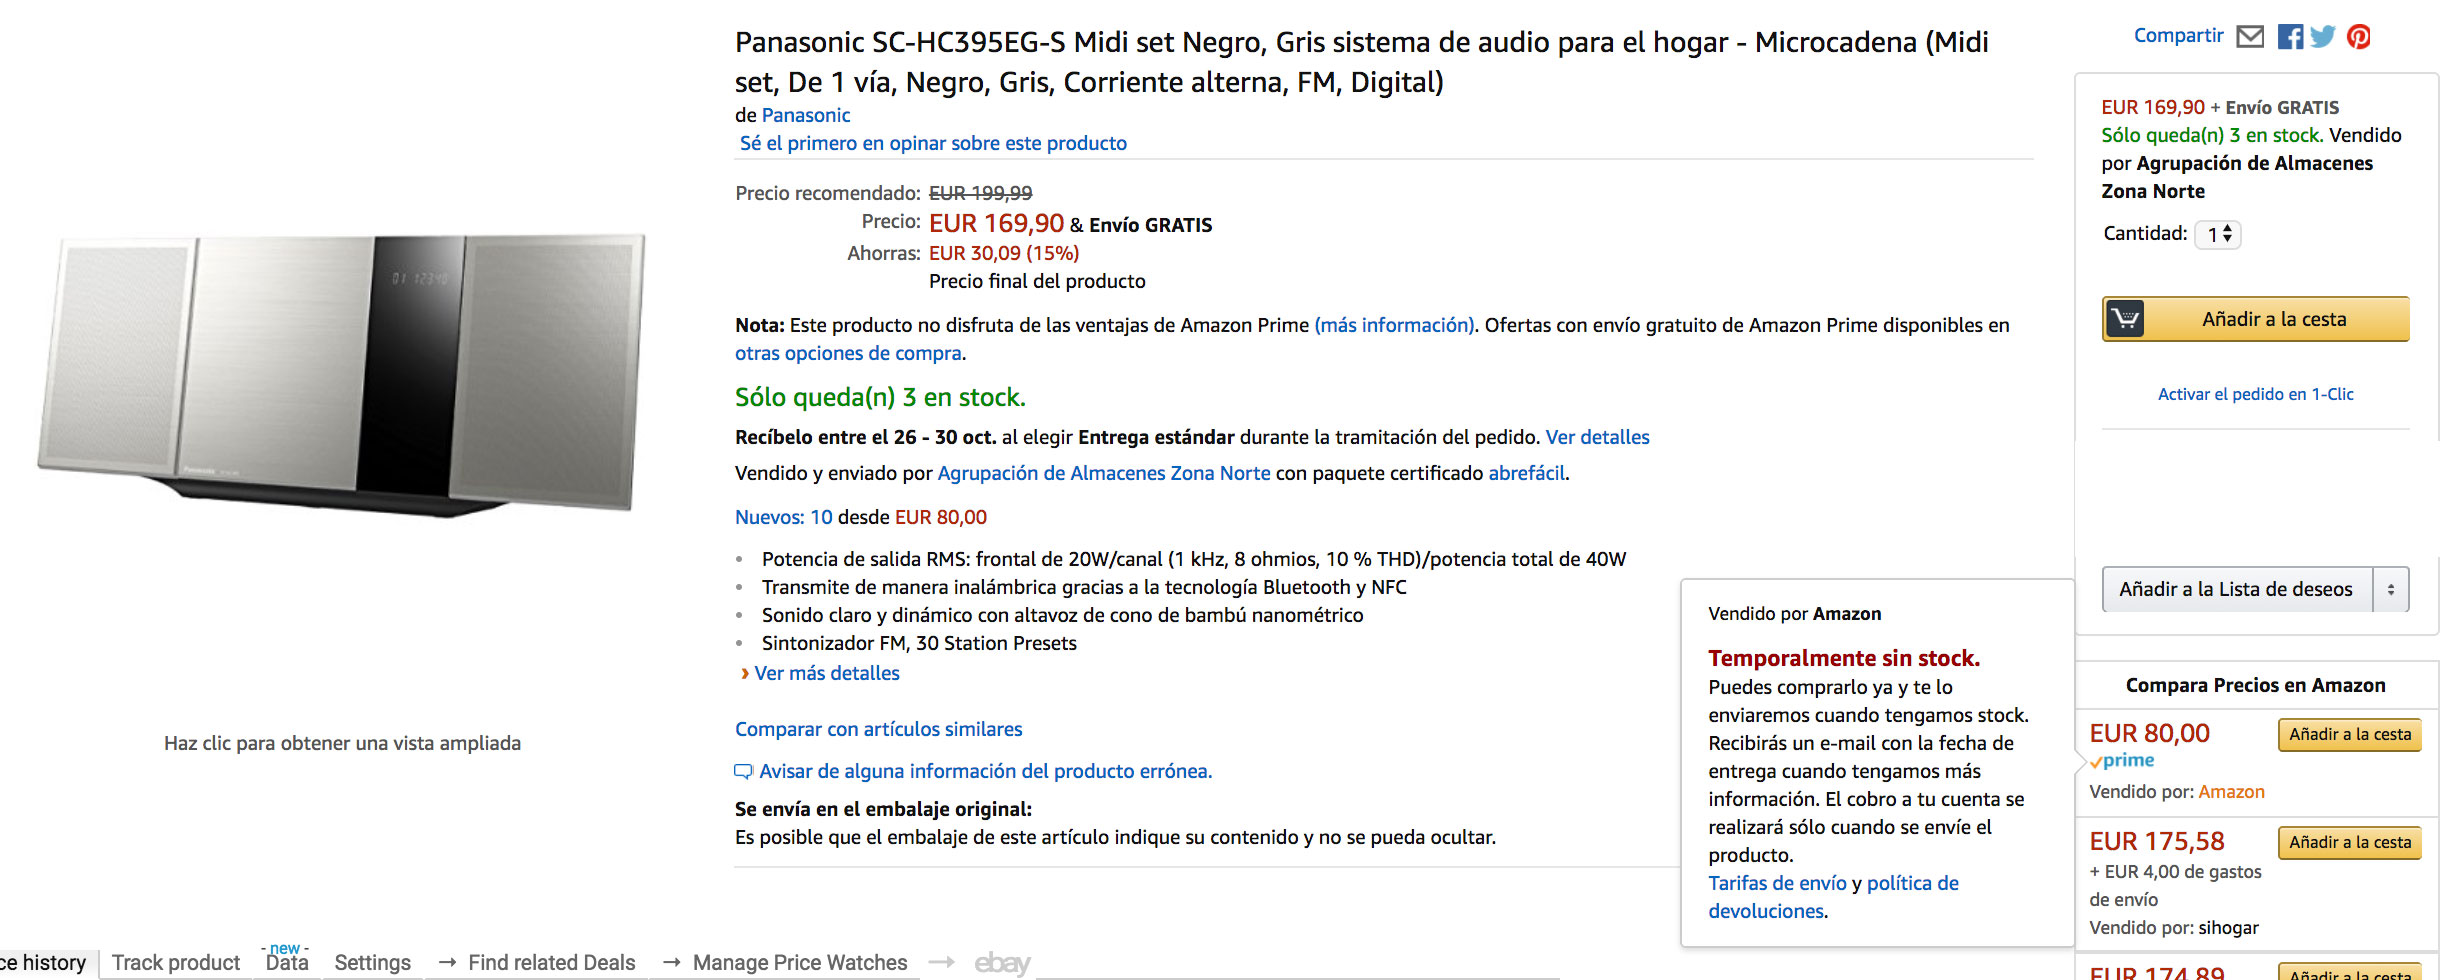 Panasonic SC-HC395EG-S barato oferta blog de ofertas bdo .jpg